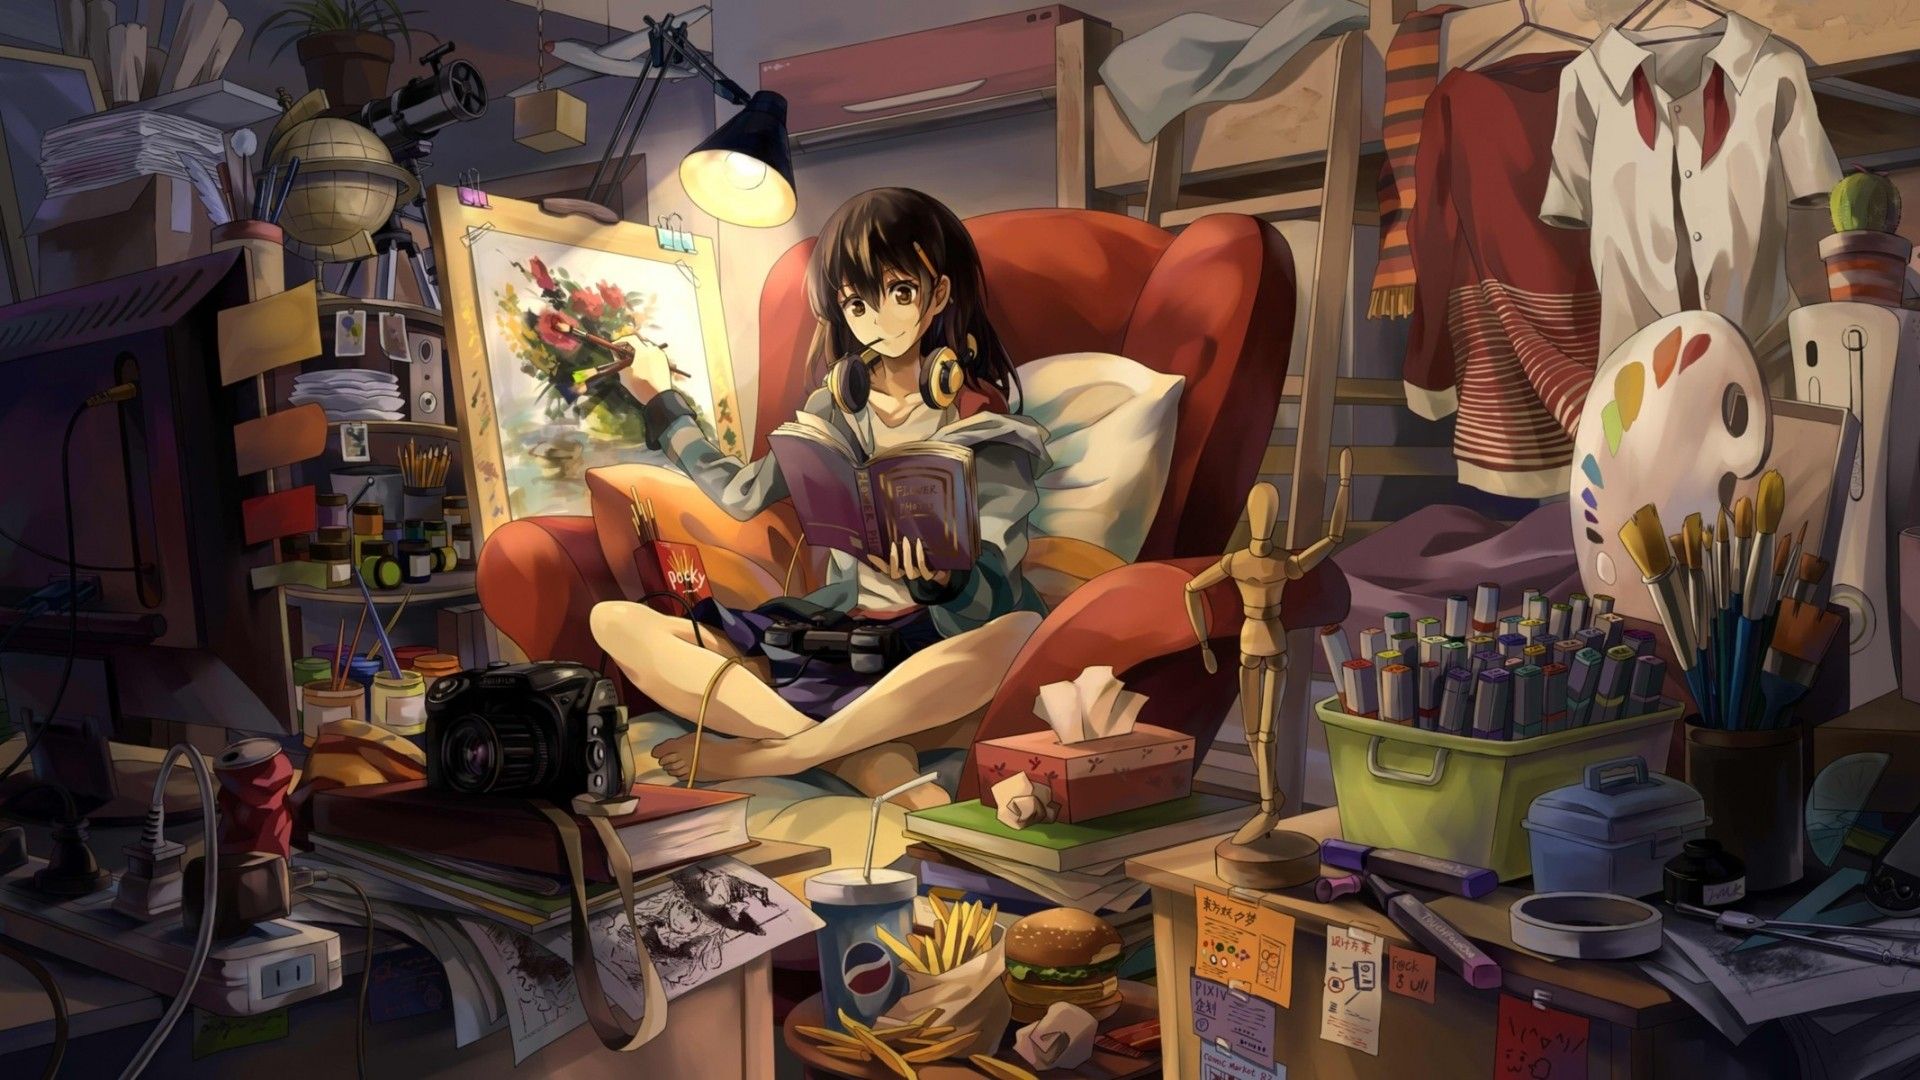 Gaming Anime Girl Wallpaper Free Gaming Anime Girl